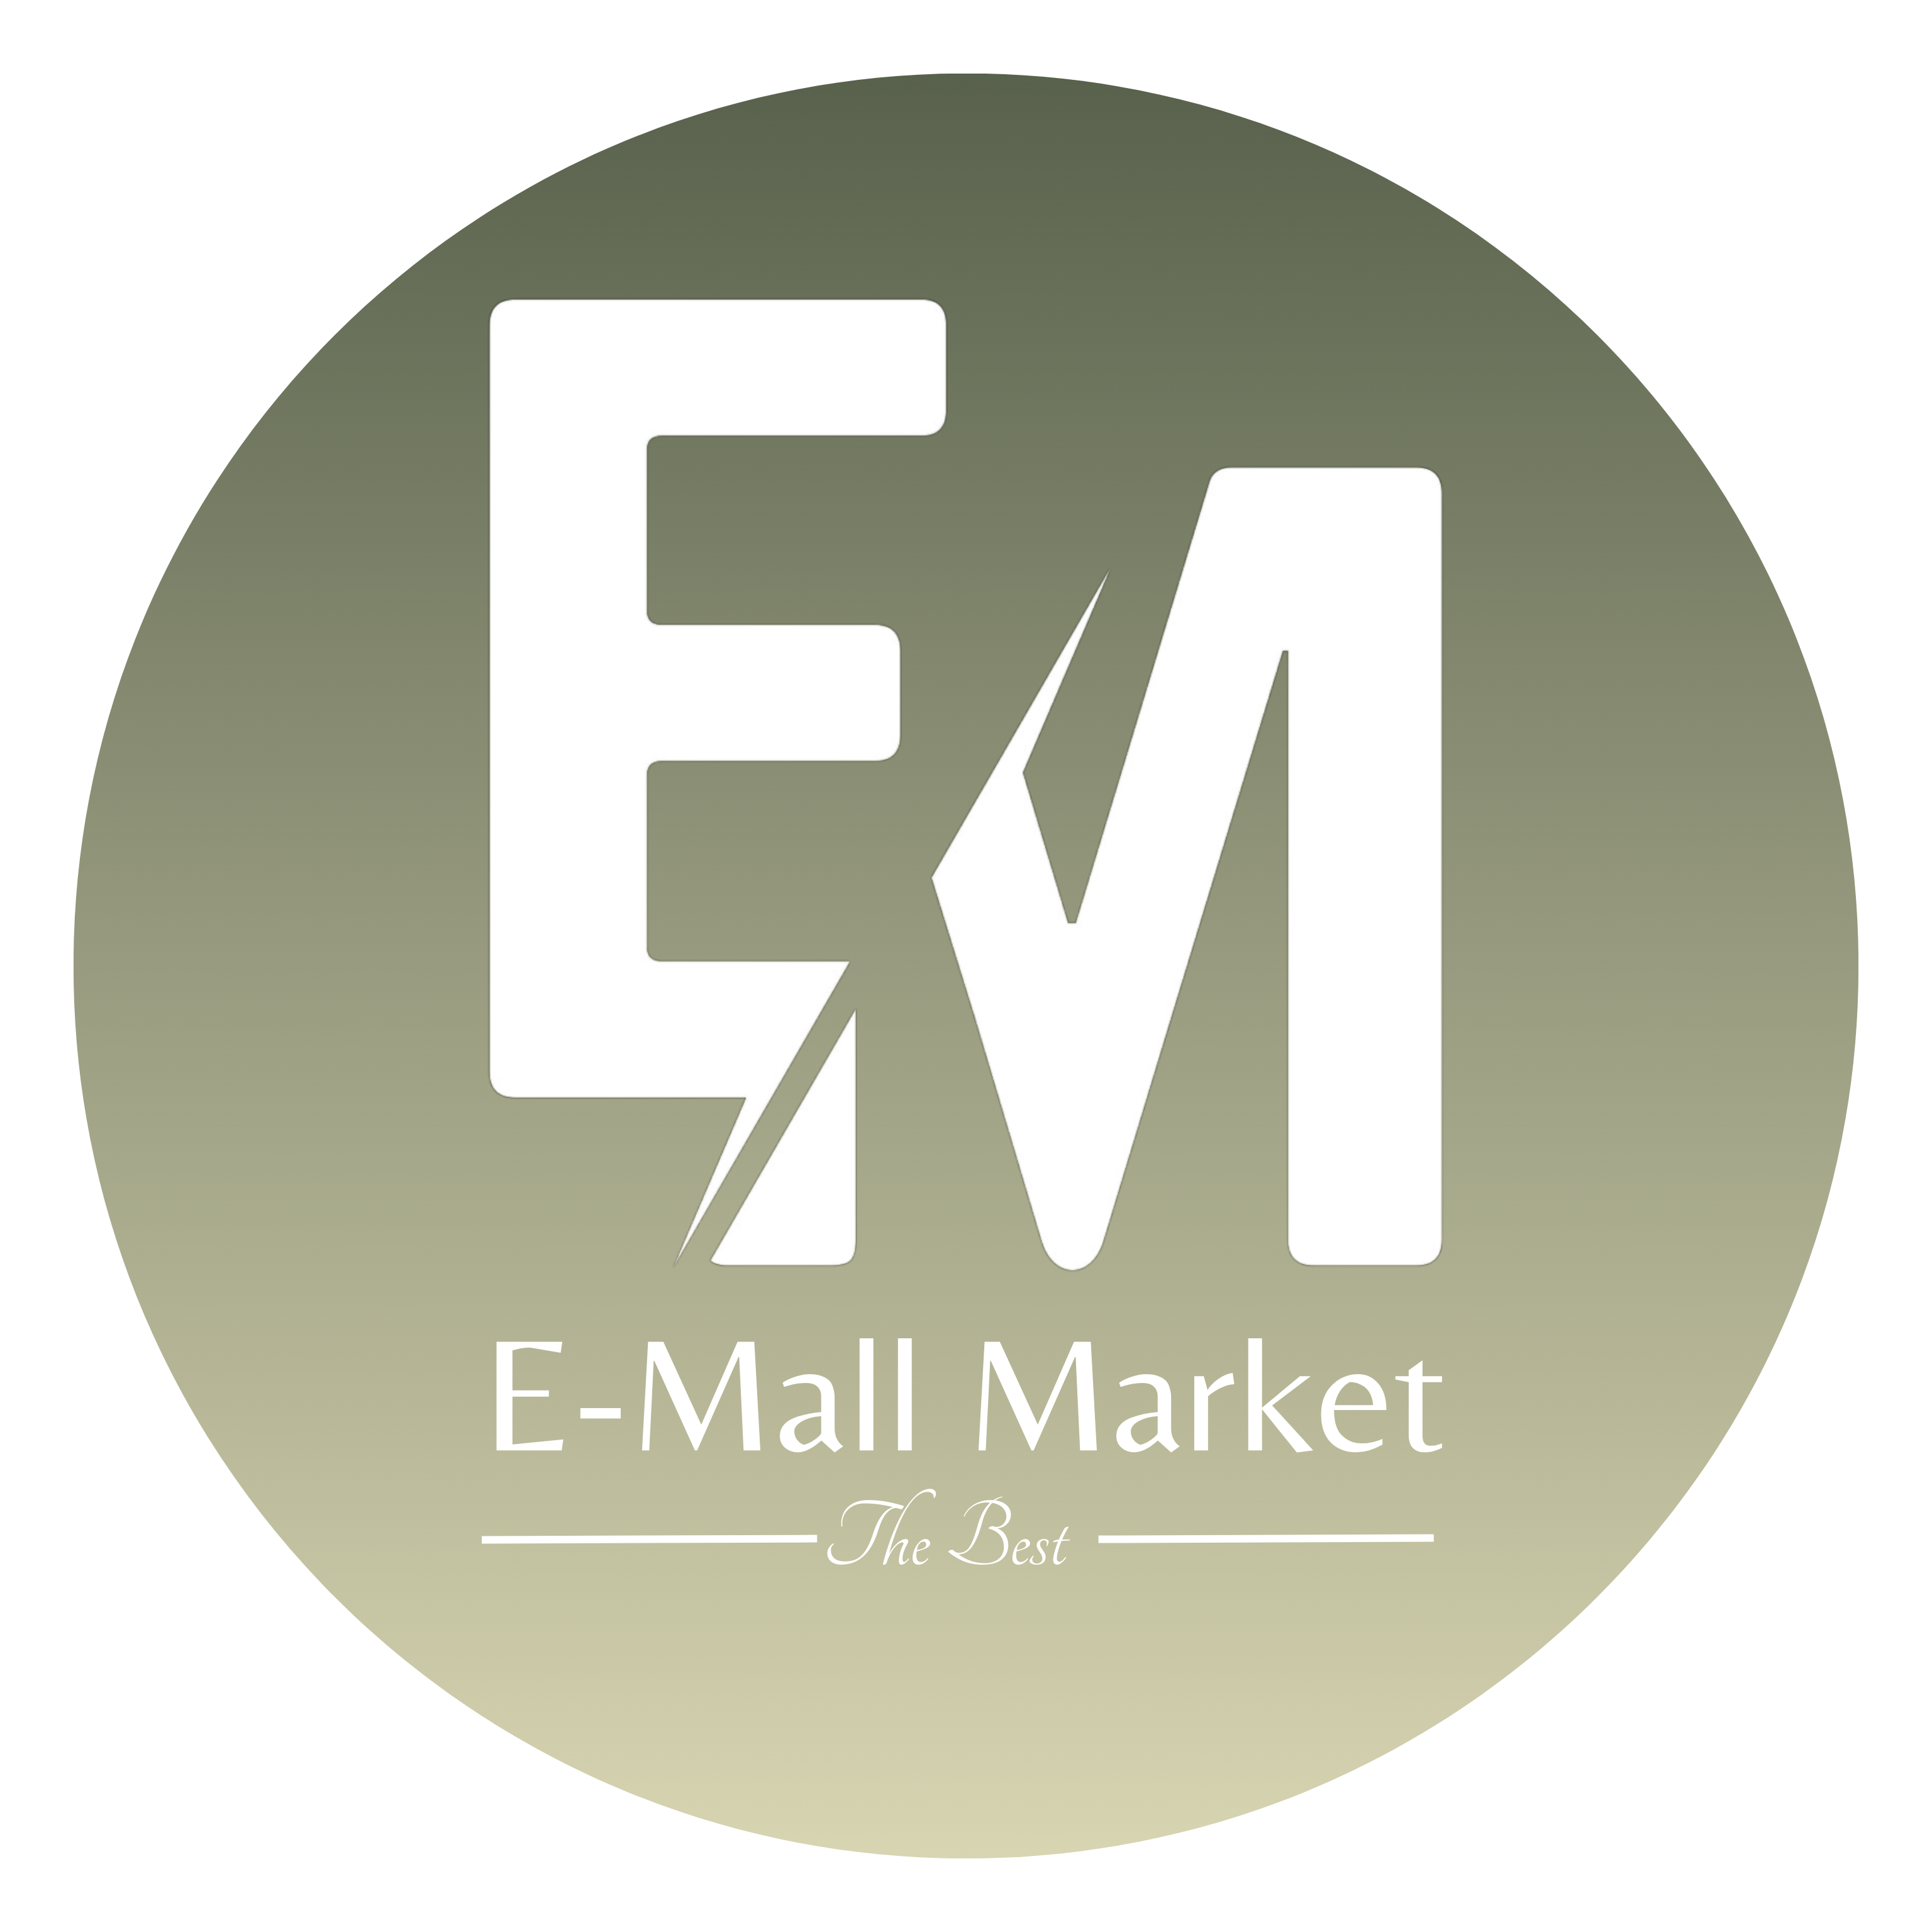 E-mallmarket